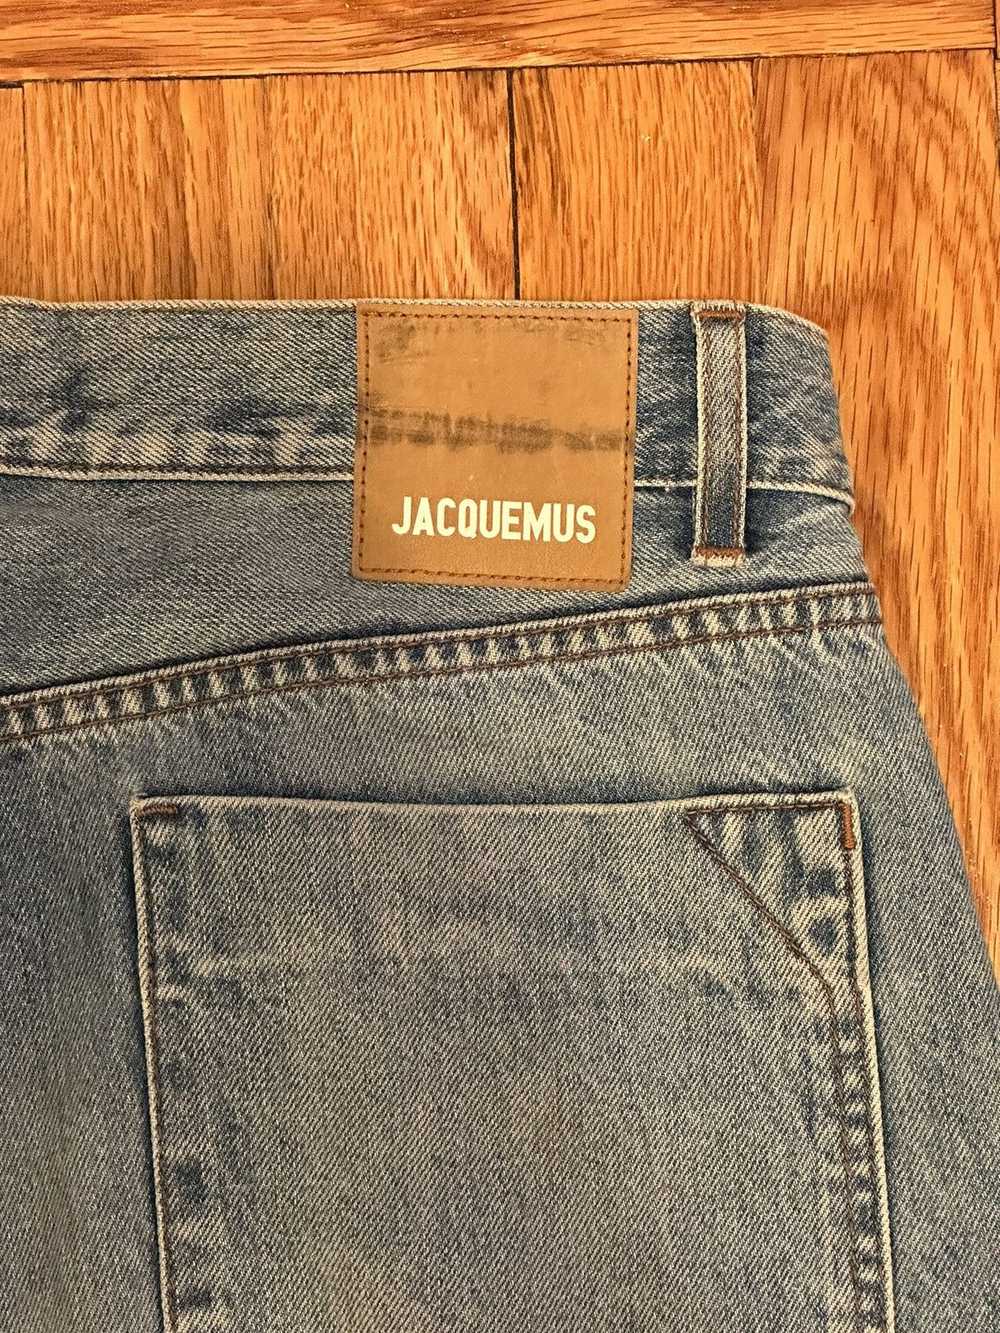 Jacquemus Jacquemus light wash jeans - image 9